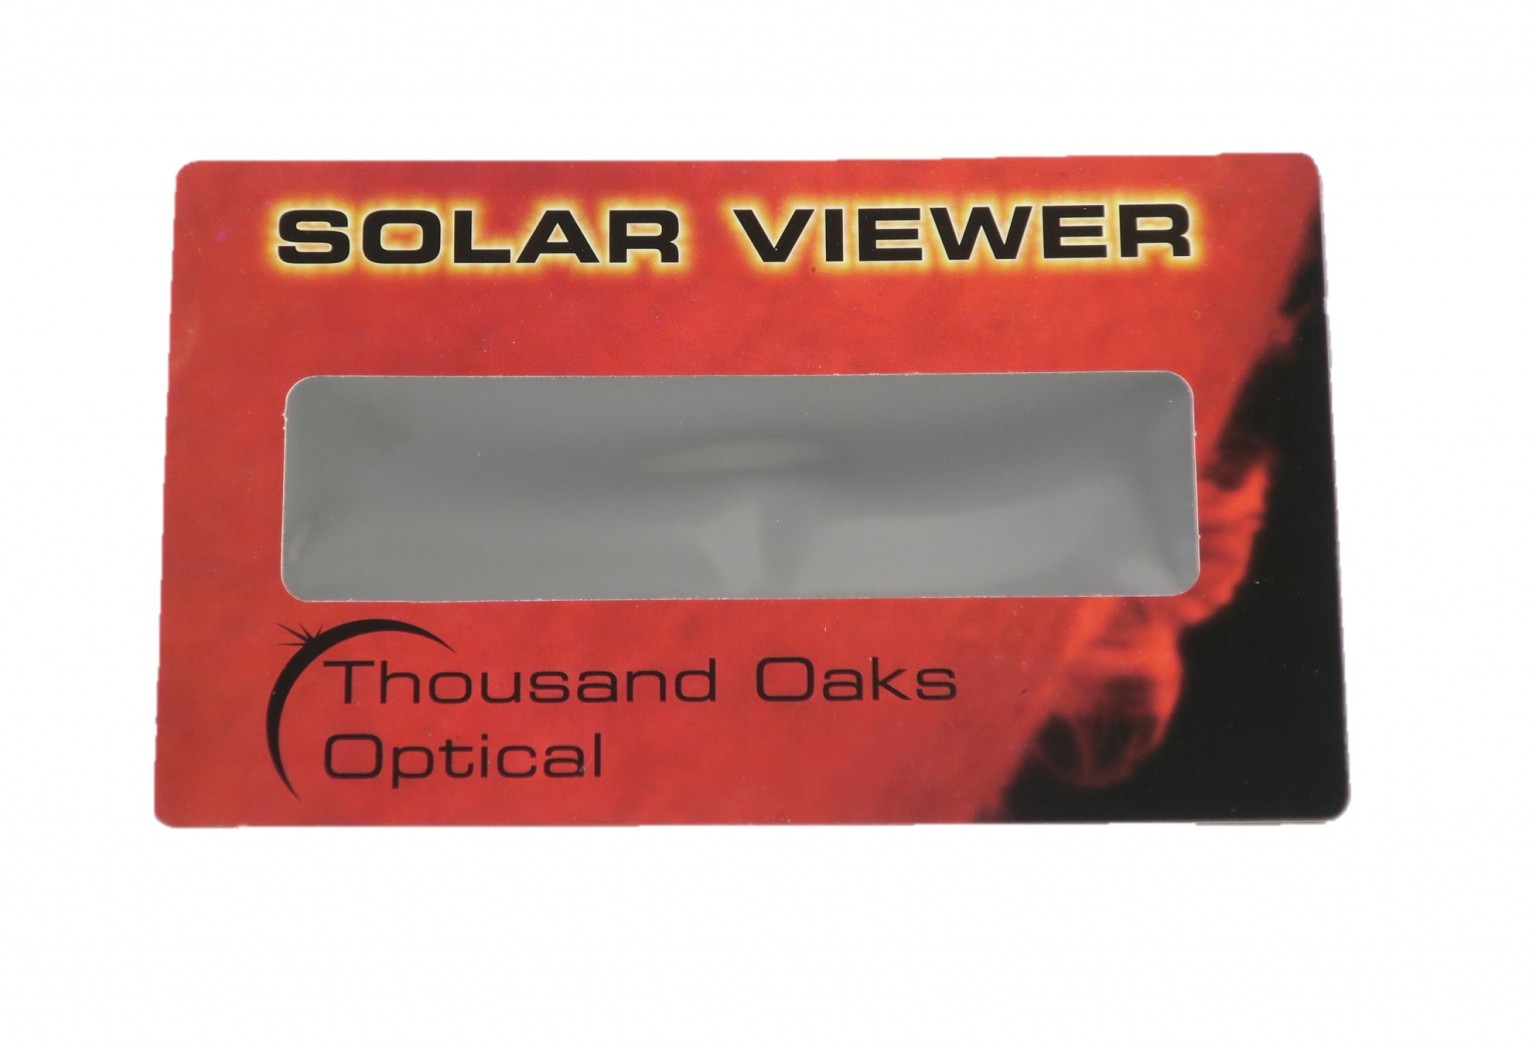 Thousand Oaks Optical Solar Viewer x 50